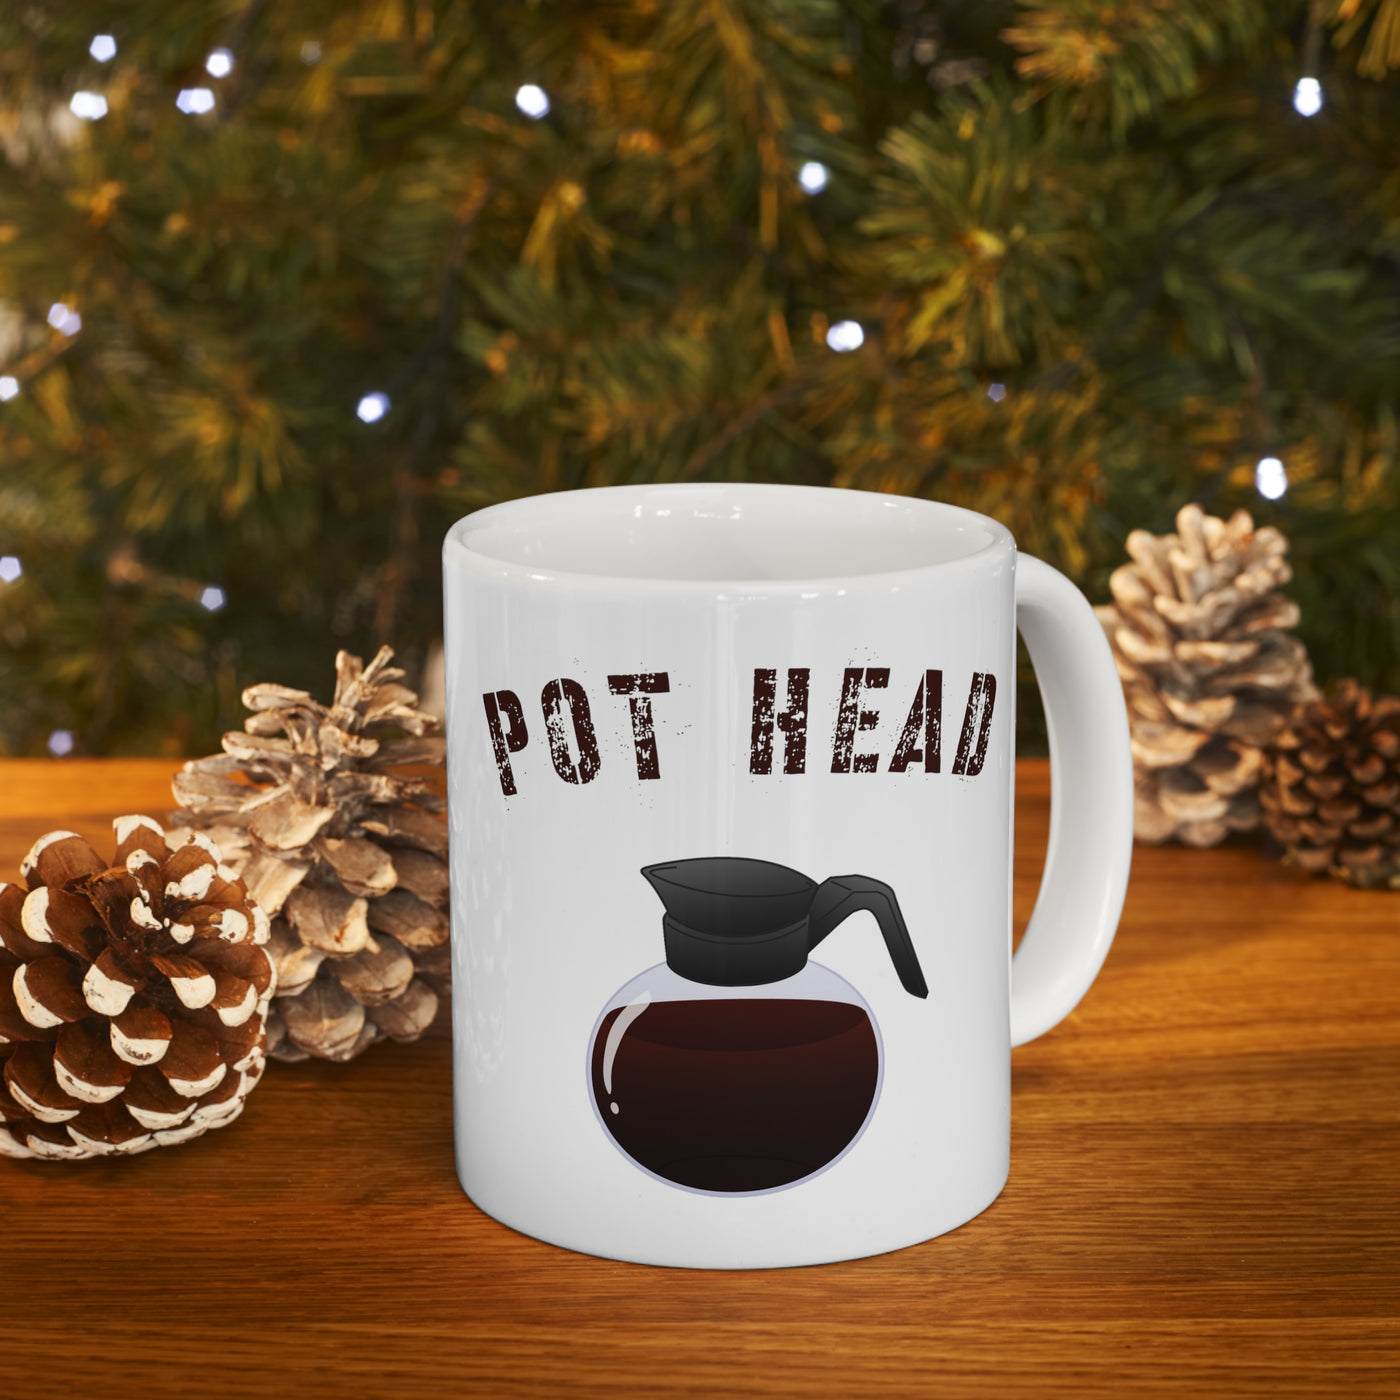 Pot Head 11oz Ceramic Mug